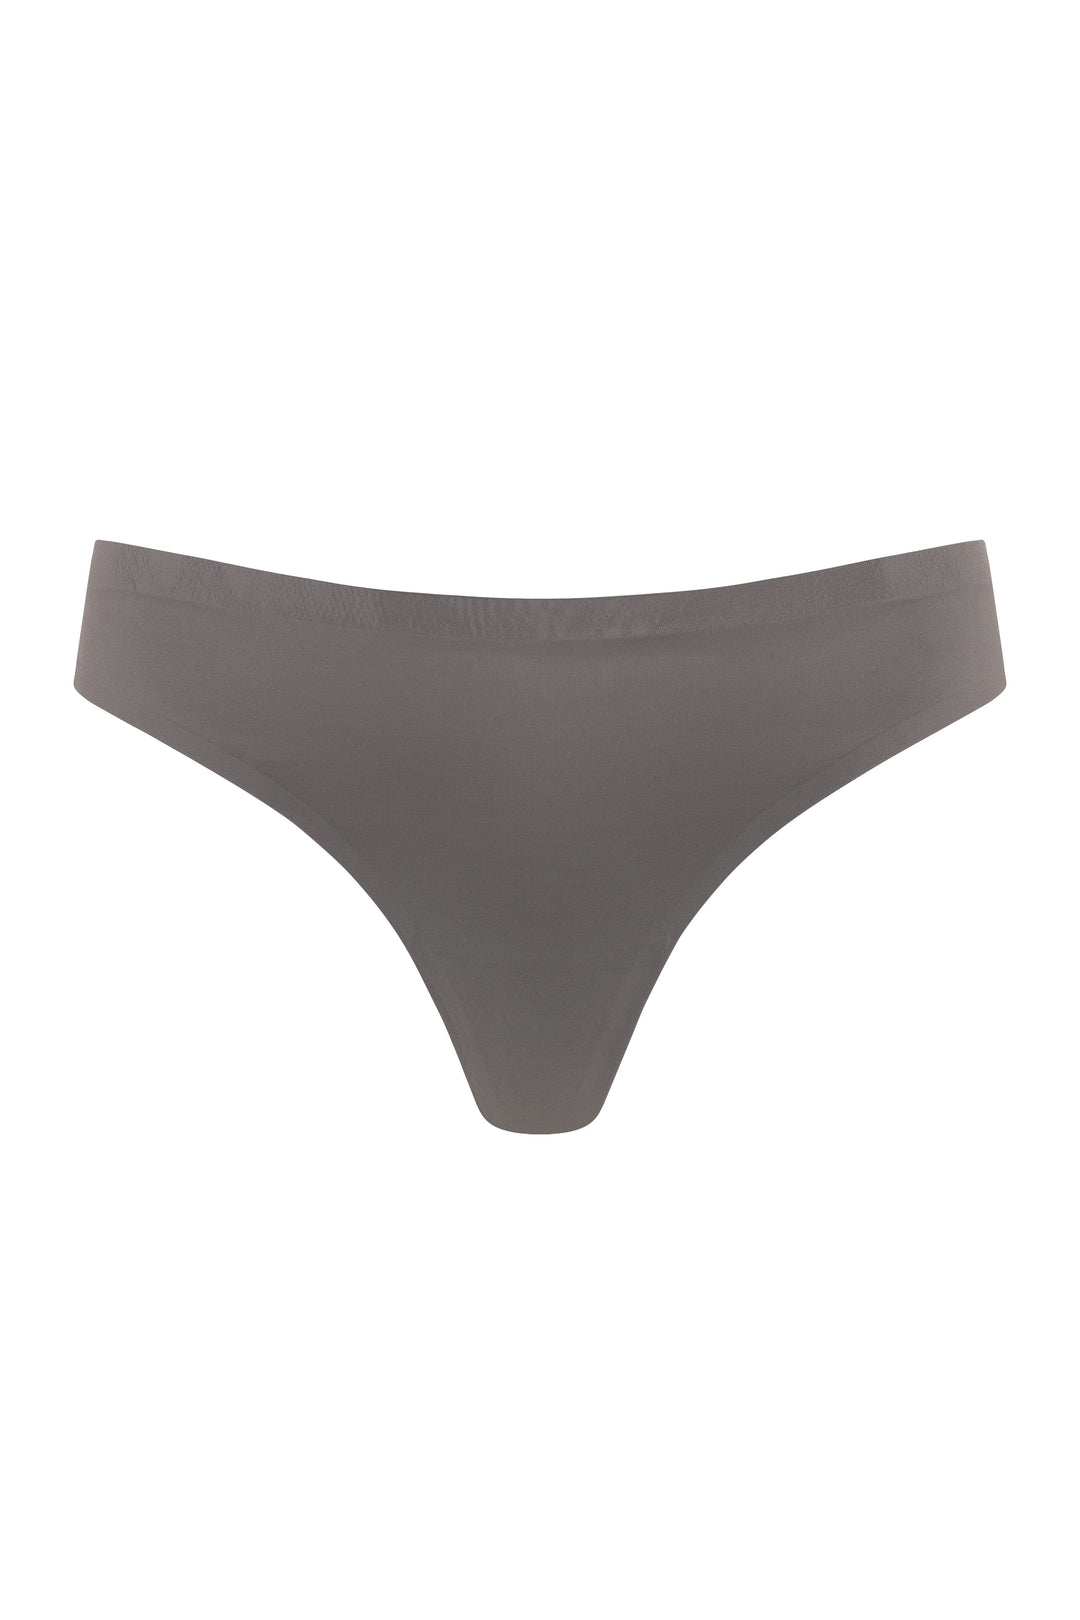 Rts Women Underwear Low Waist Seamless Laser Cutting Underwear